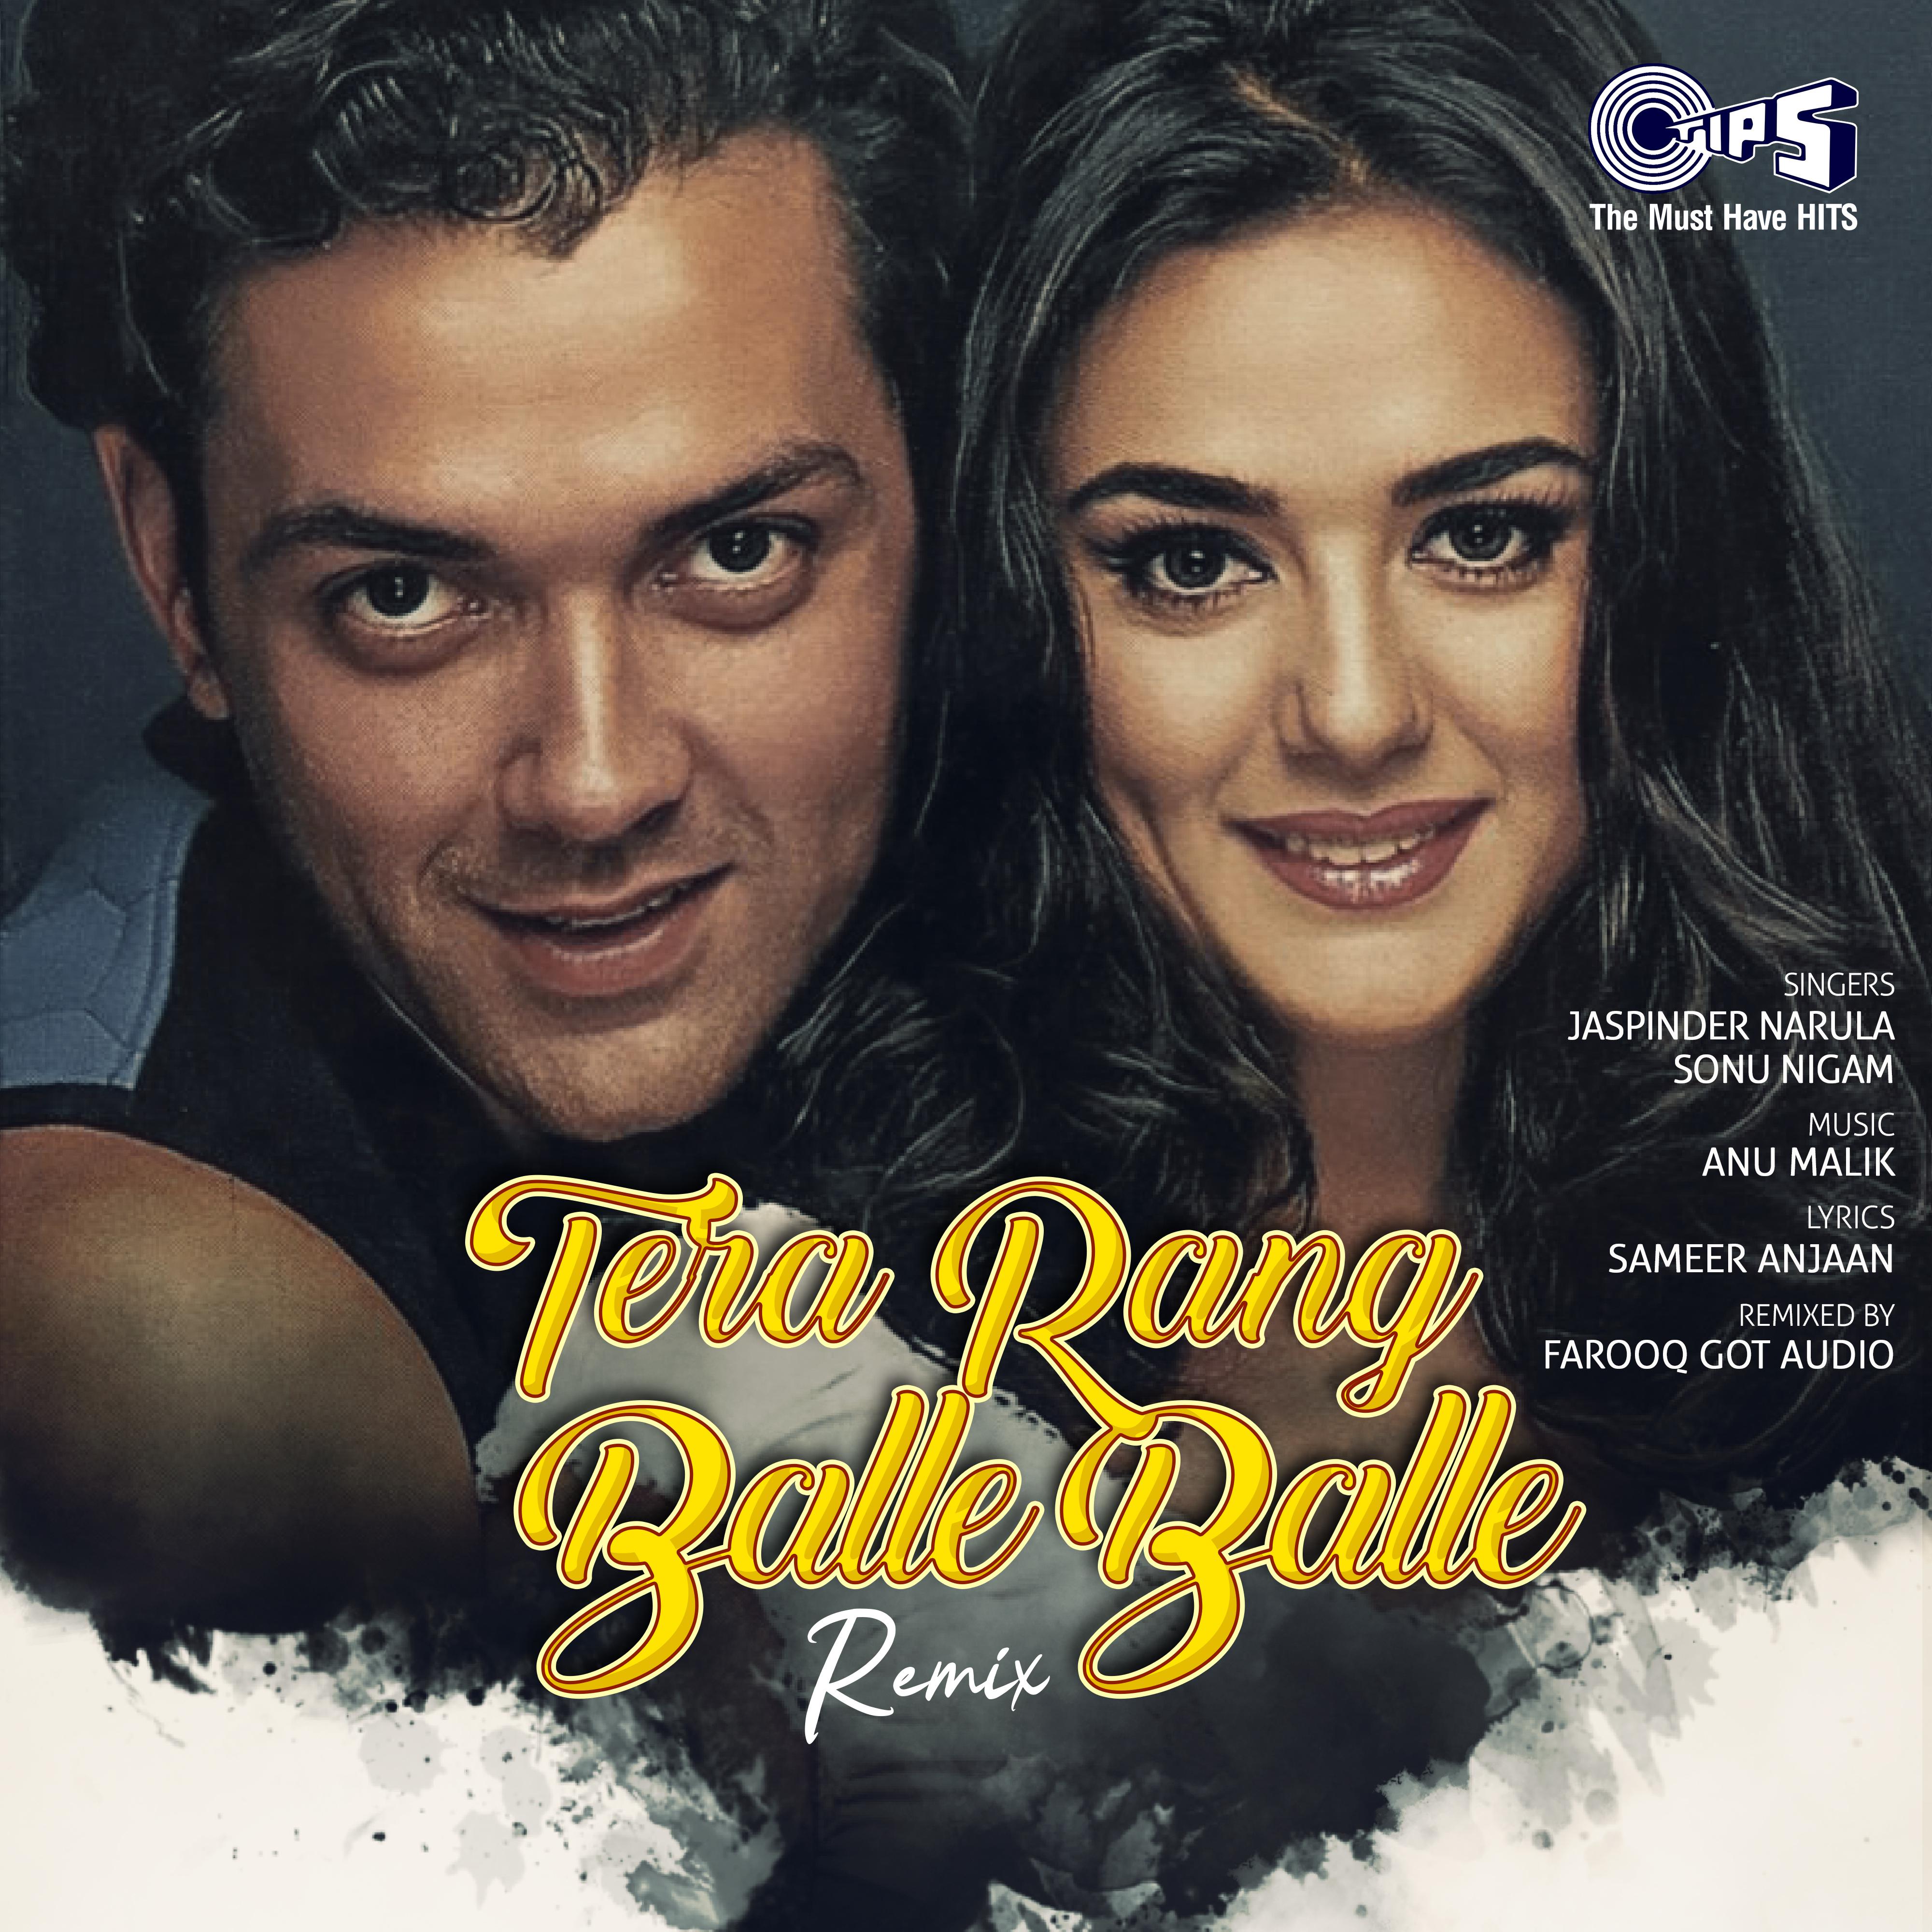 Jaspinder Narula - Tera Rang Balle Balle (Remix)